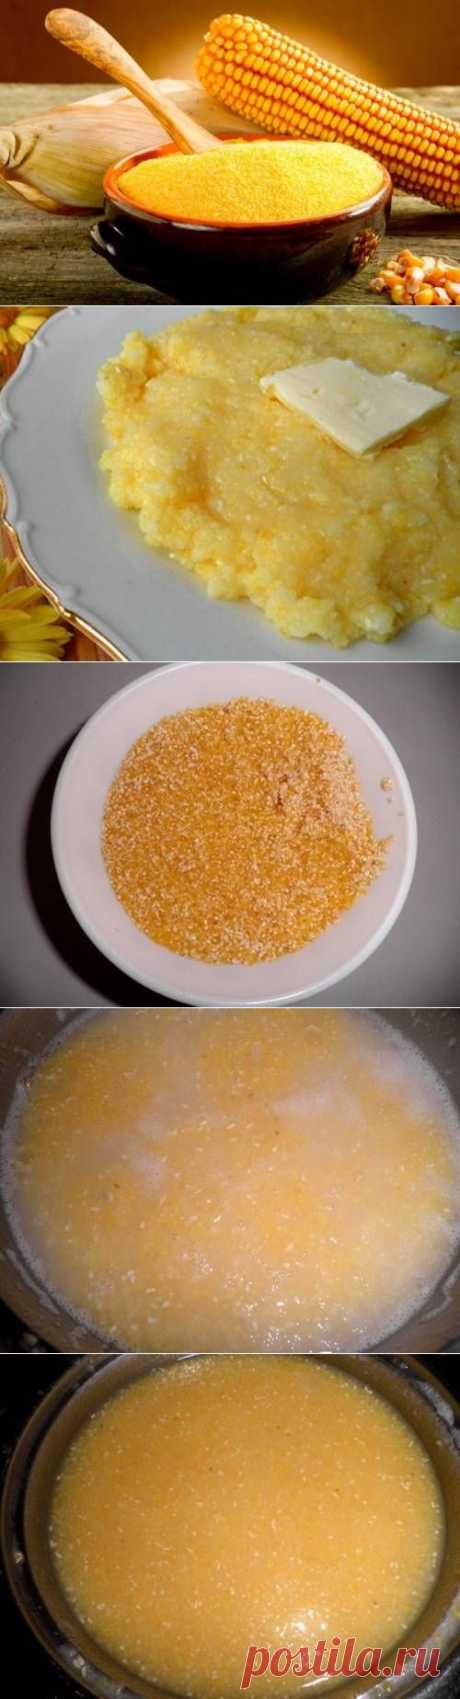 Кукурузная каша - пошаговый кулинарный рецепт с фото. / Простые рецепты